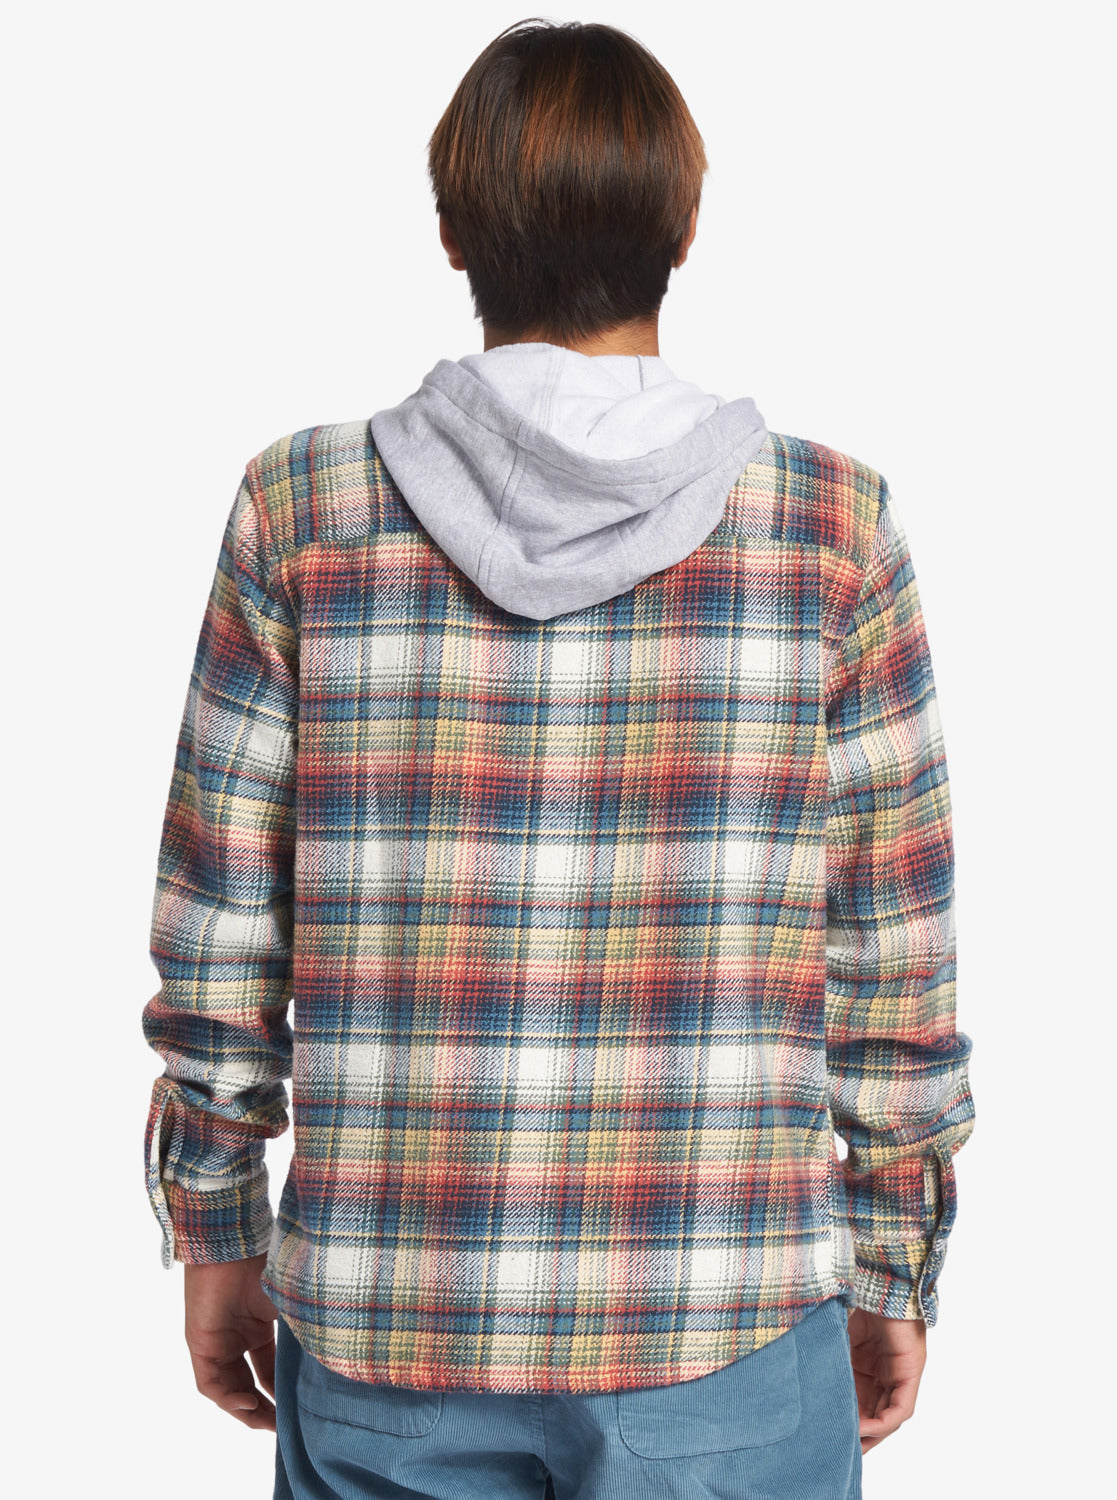 Kinloss - Long Sleeve Hooded Shirt for Men